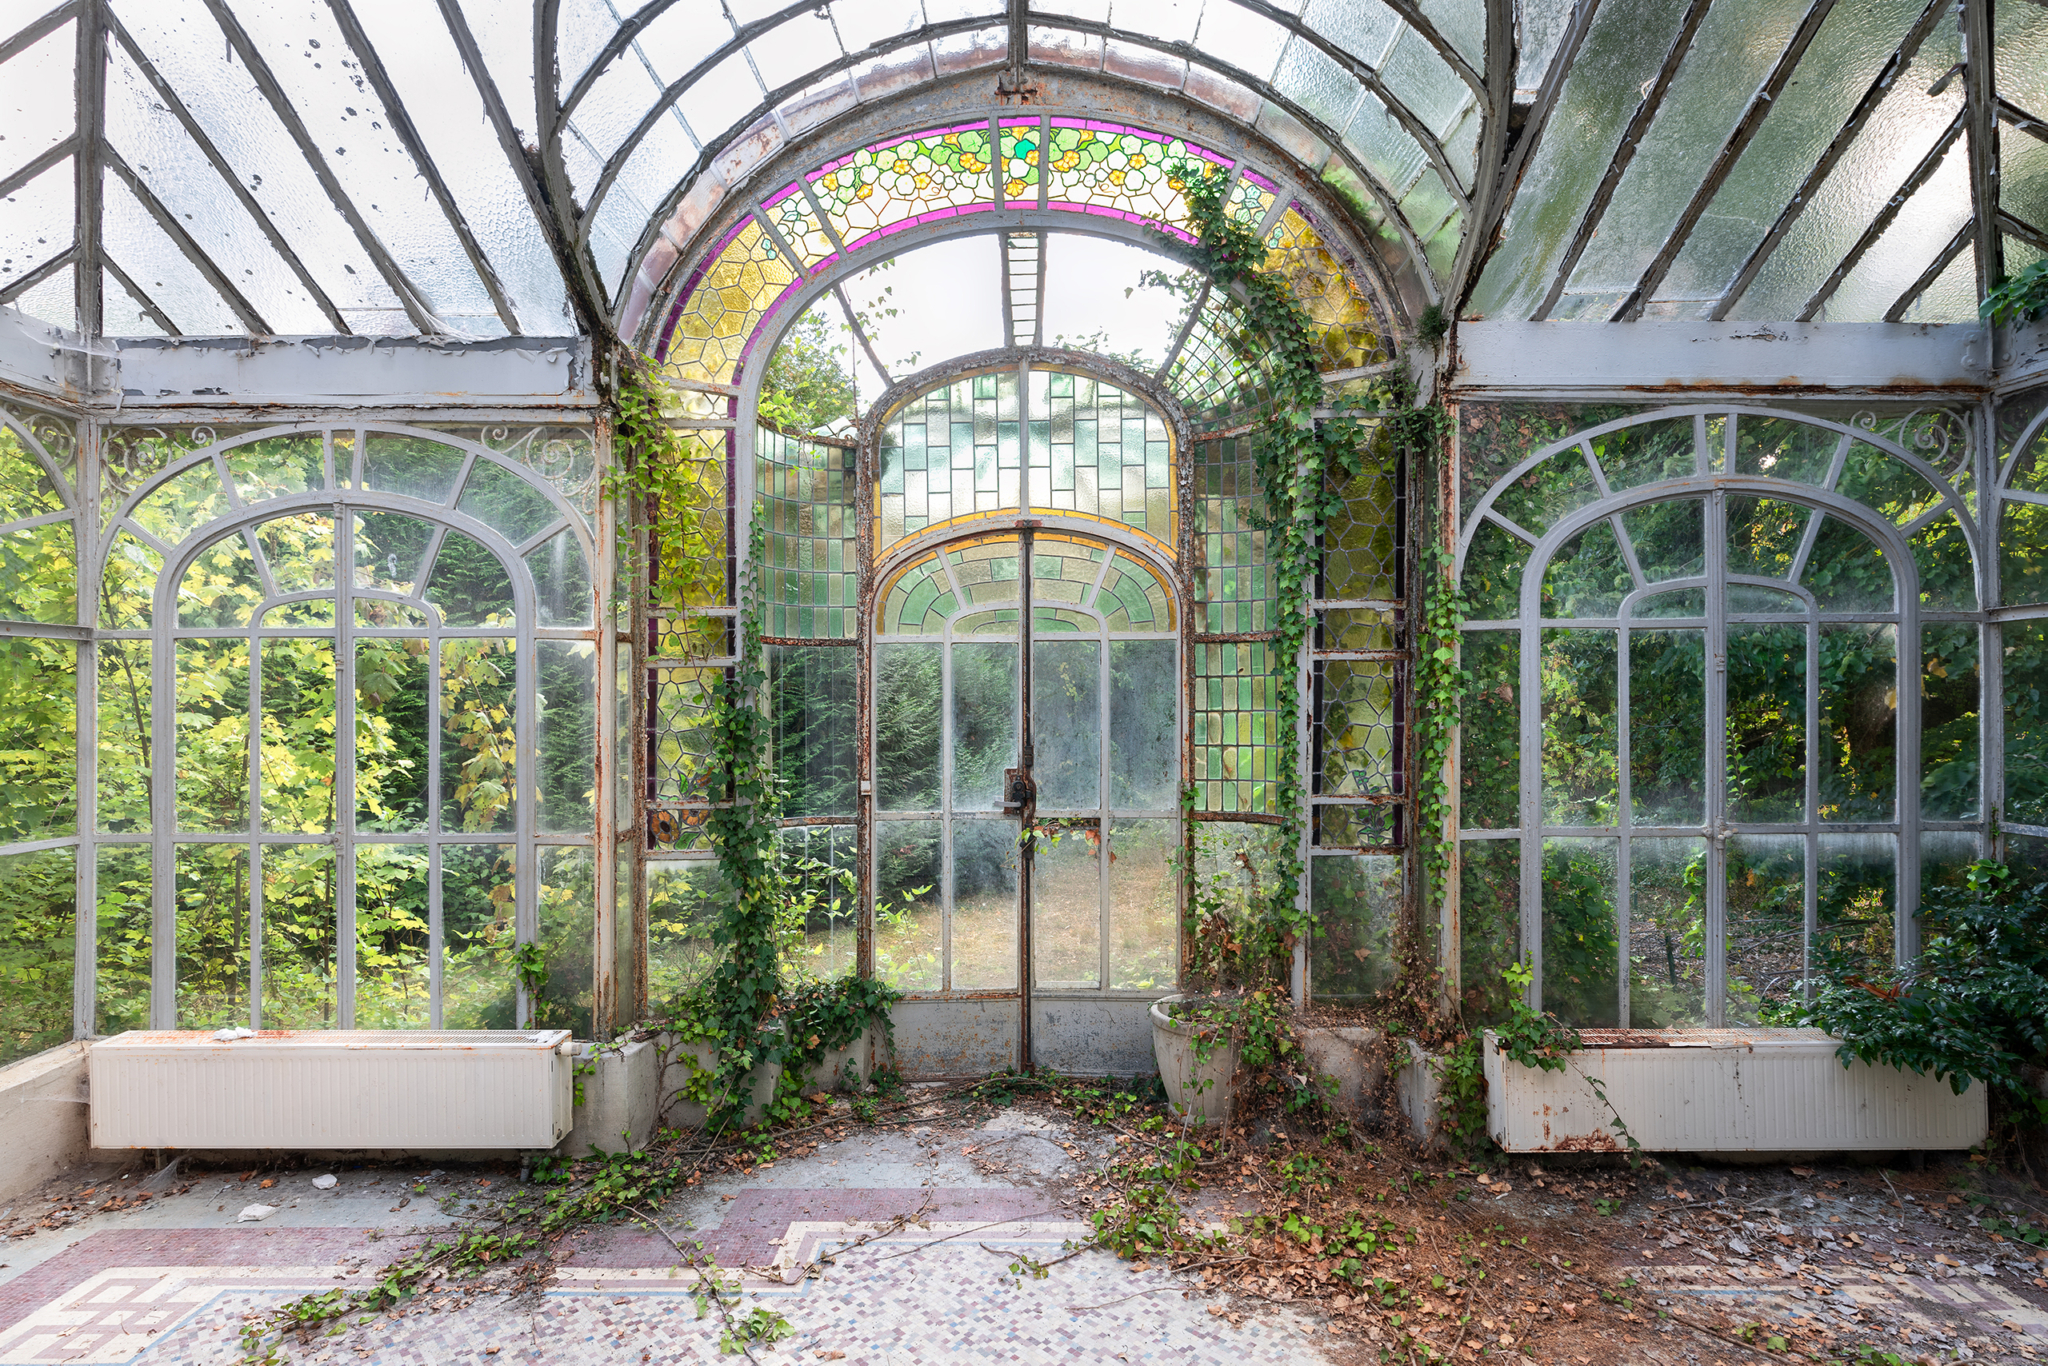 Shrine of Winter - Abandoned winter garden in France